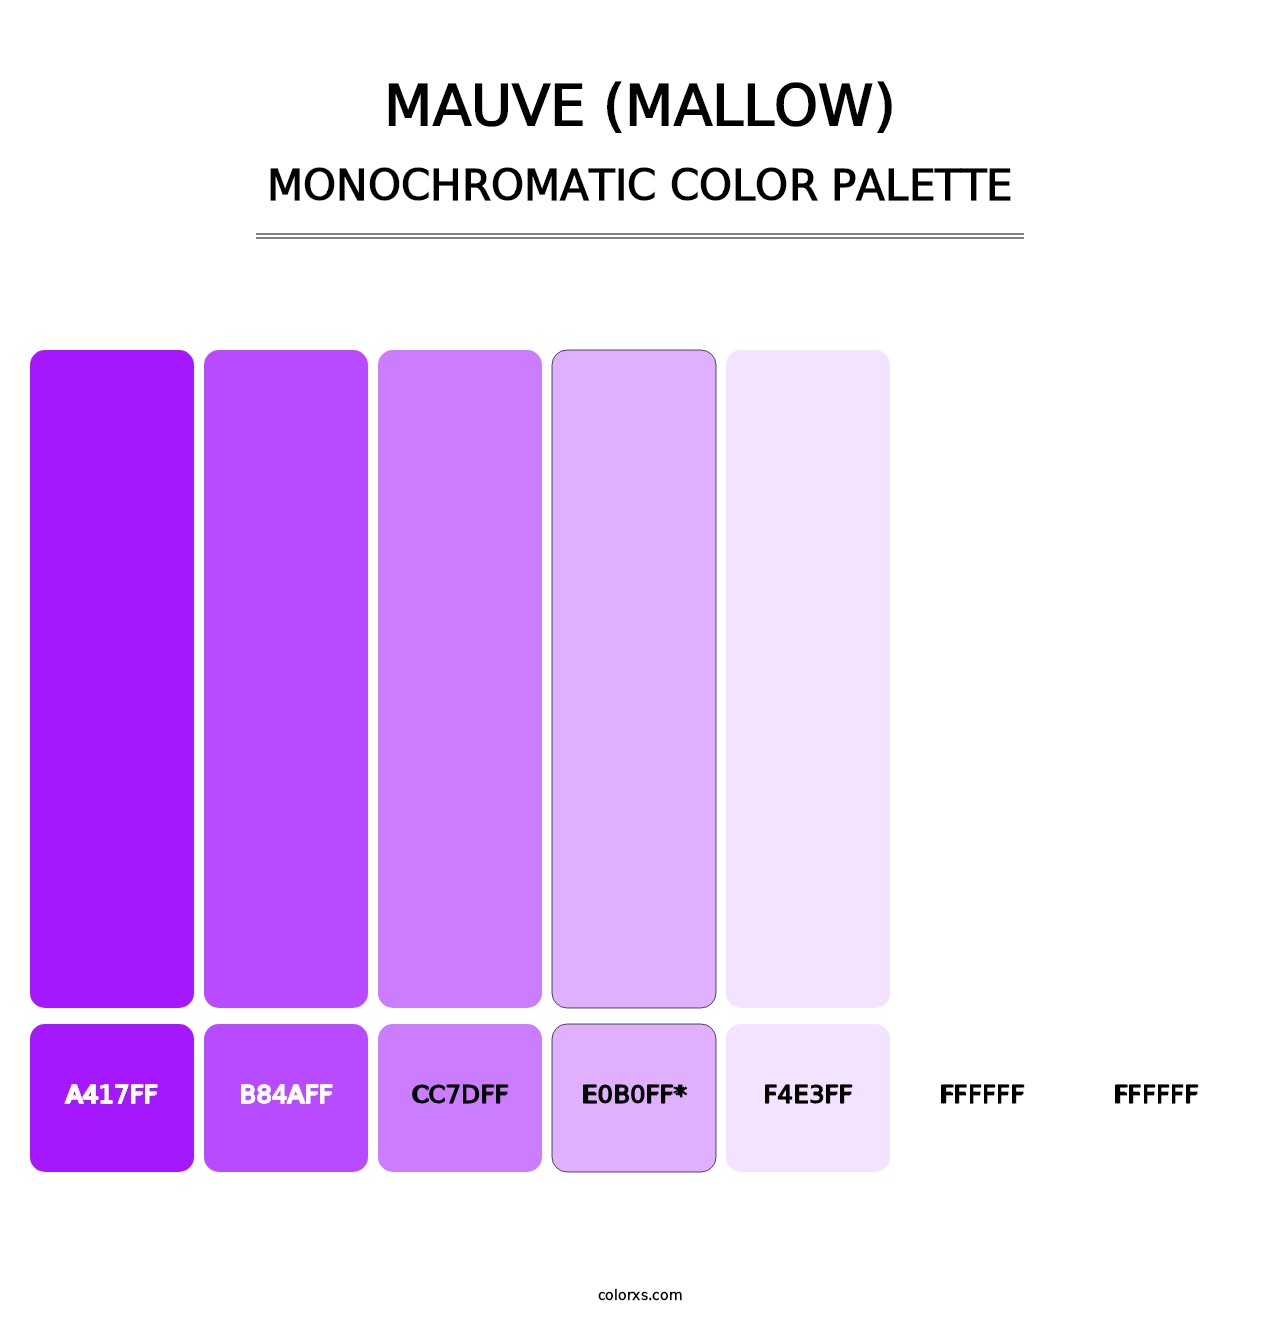 Mauve (Mallow) - Monochromatic Color Palette